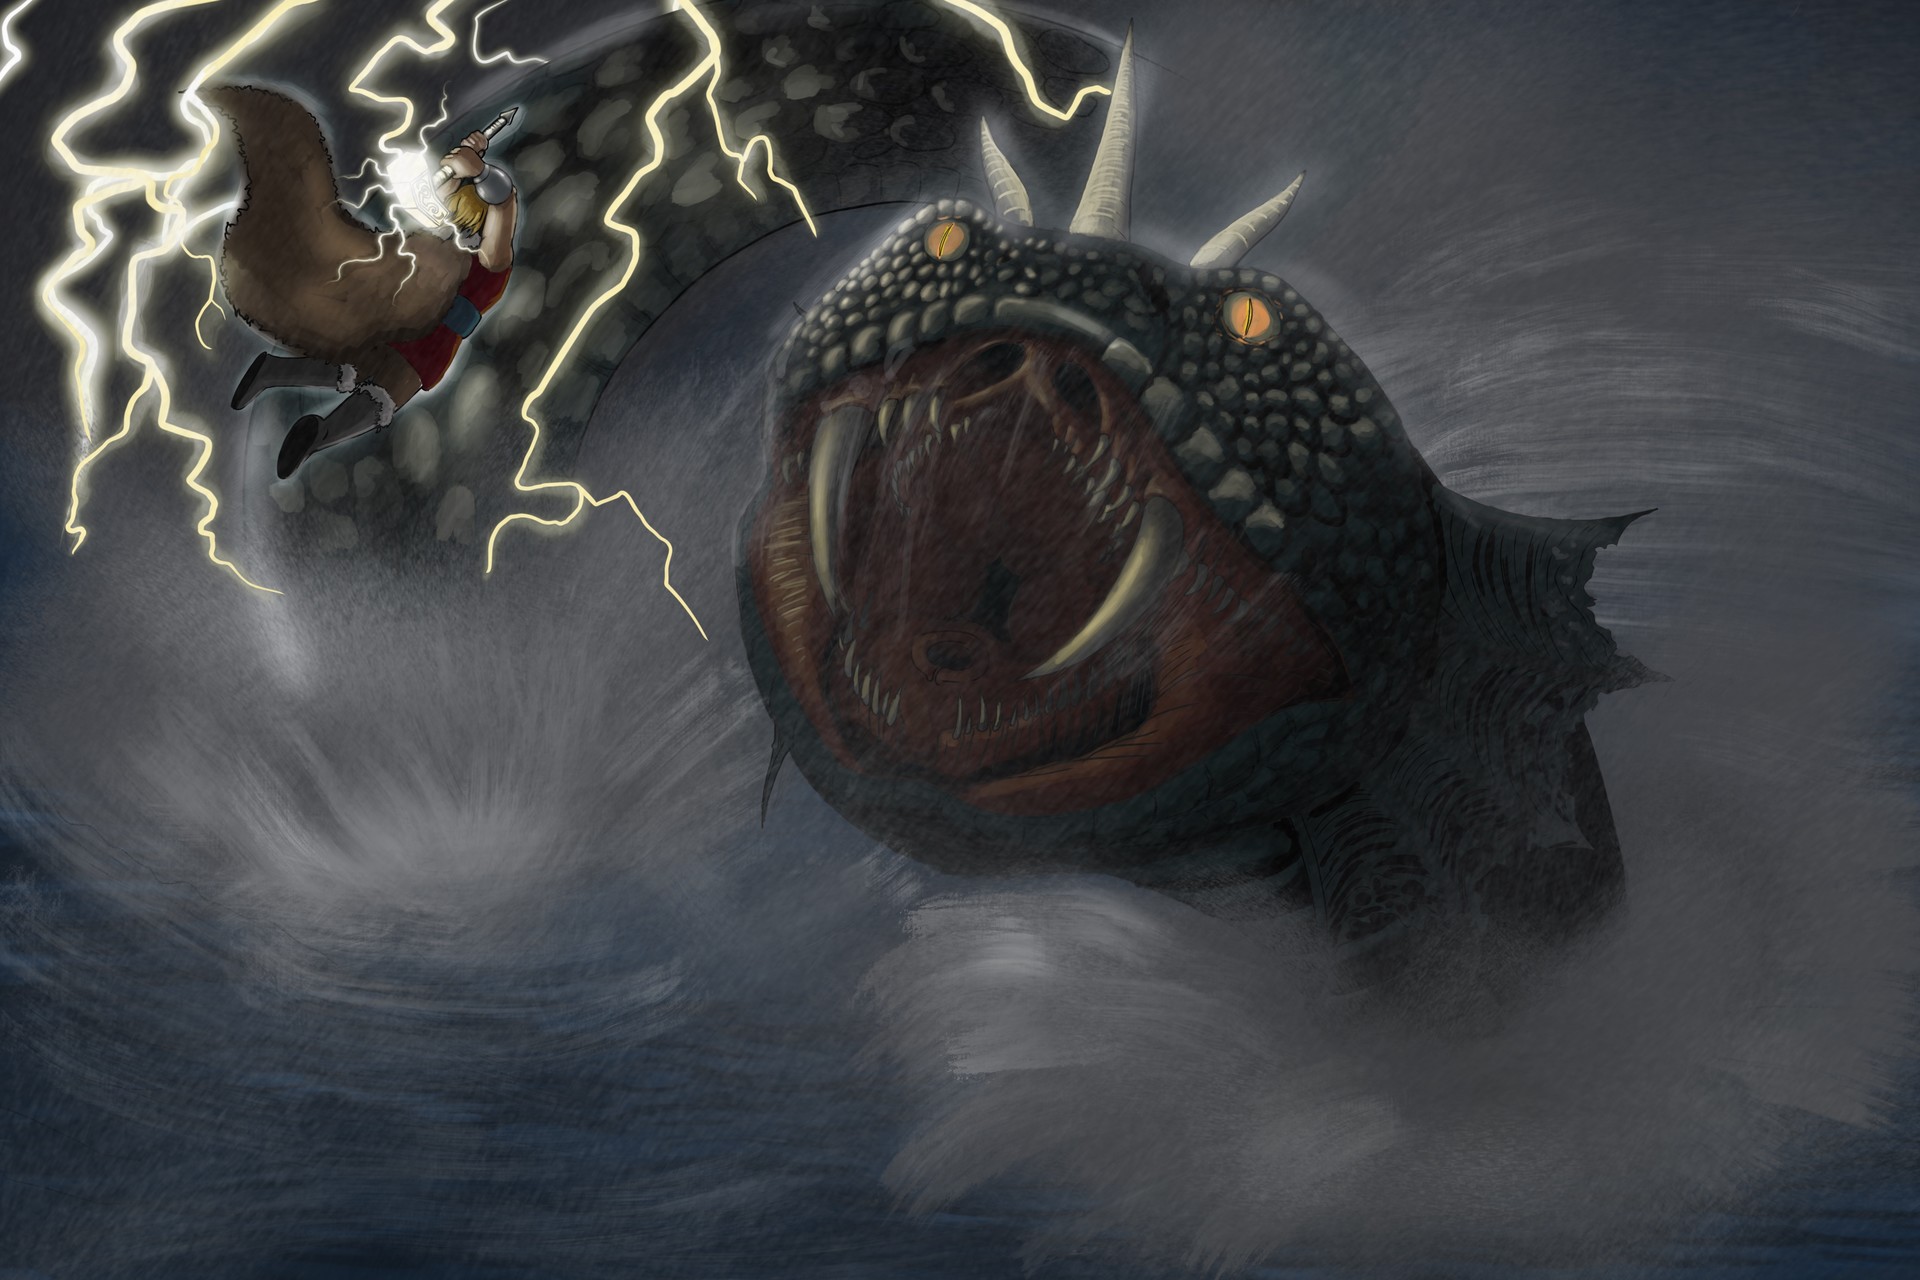 Thor battles Jormungandr, the World serpent.